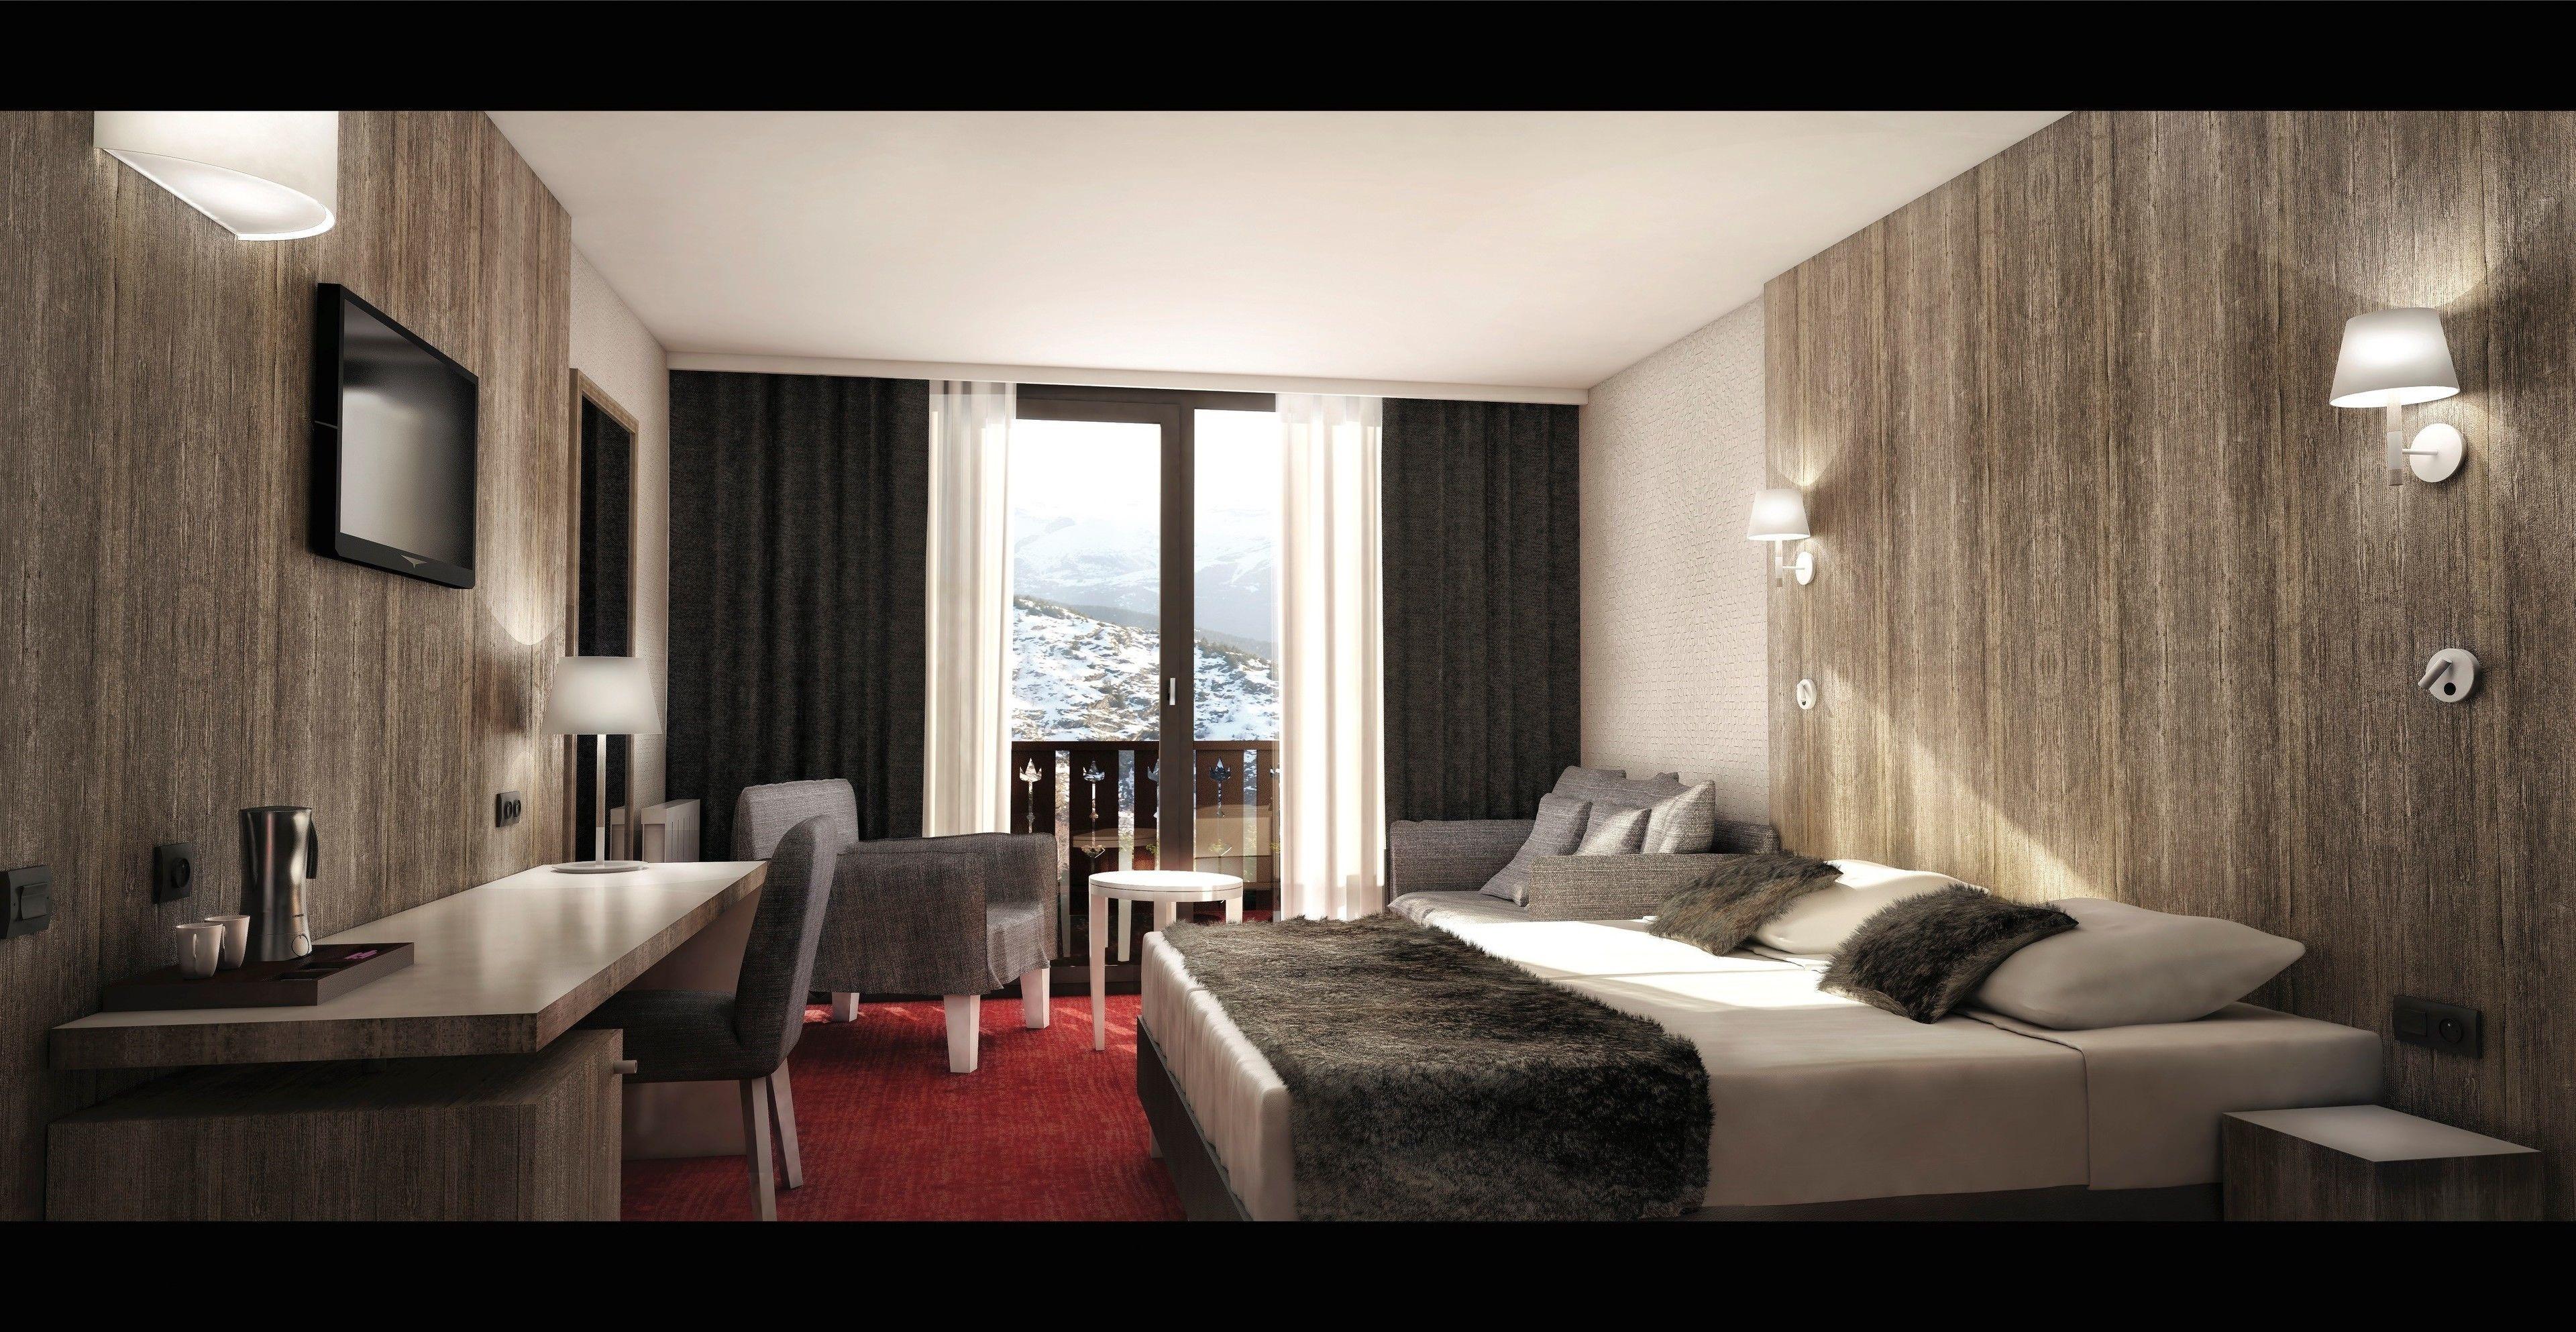 Отель Le Pic Blanc Альп-д'Юэз Экстерьер фото